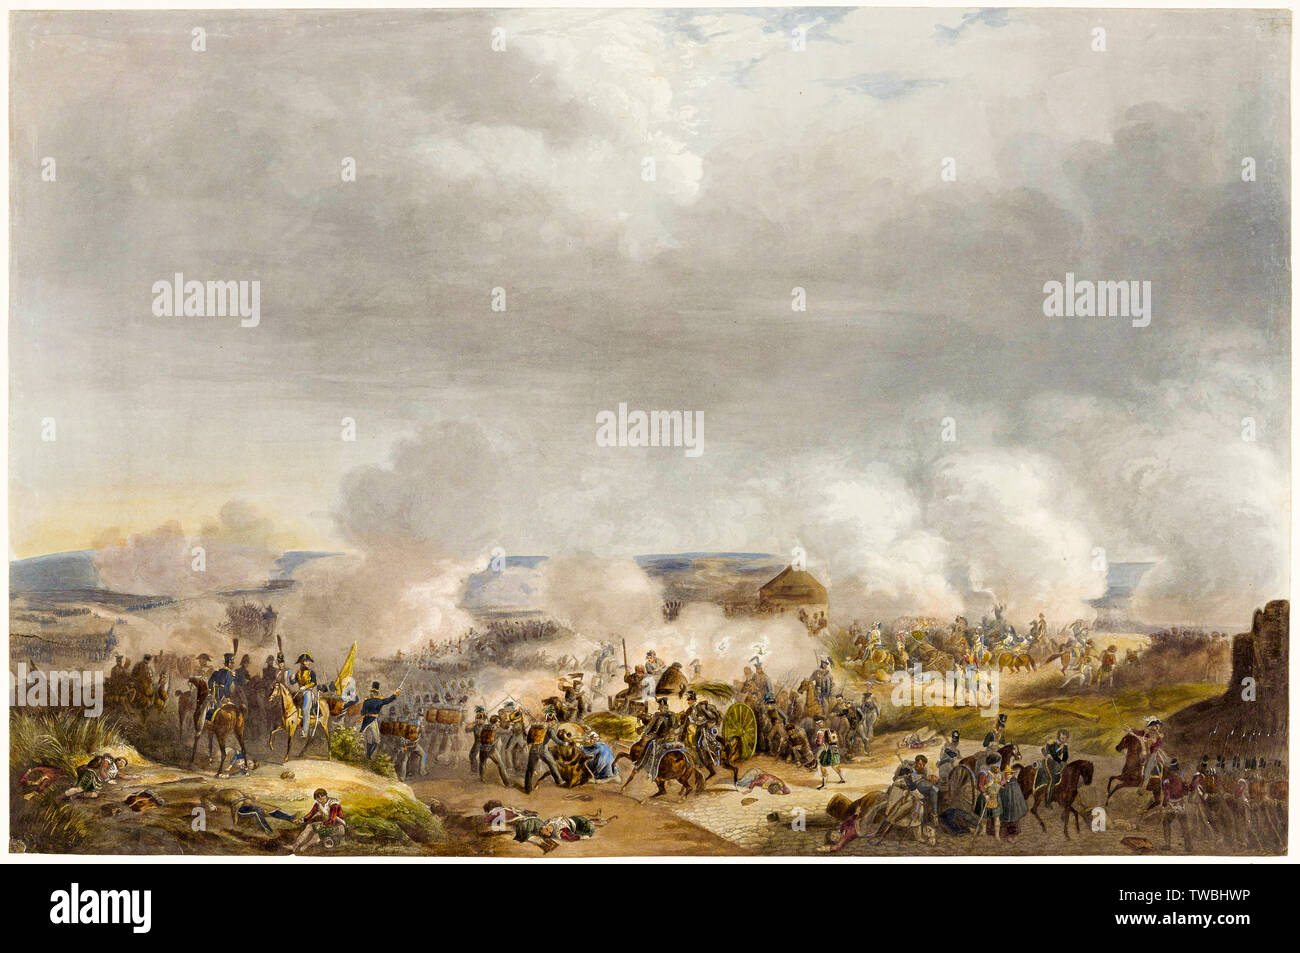 Guglielmo II dei Paesi Bassi alla battaglia di Quatre-Bras, 1815, stampa, circa 1825 Foto Stock